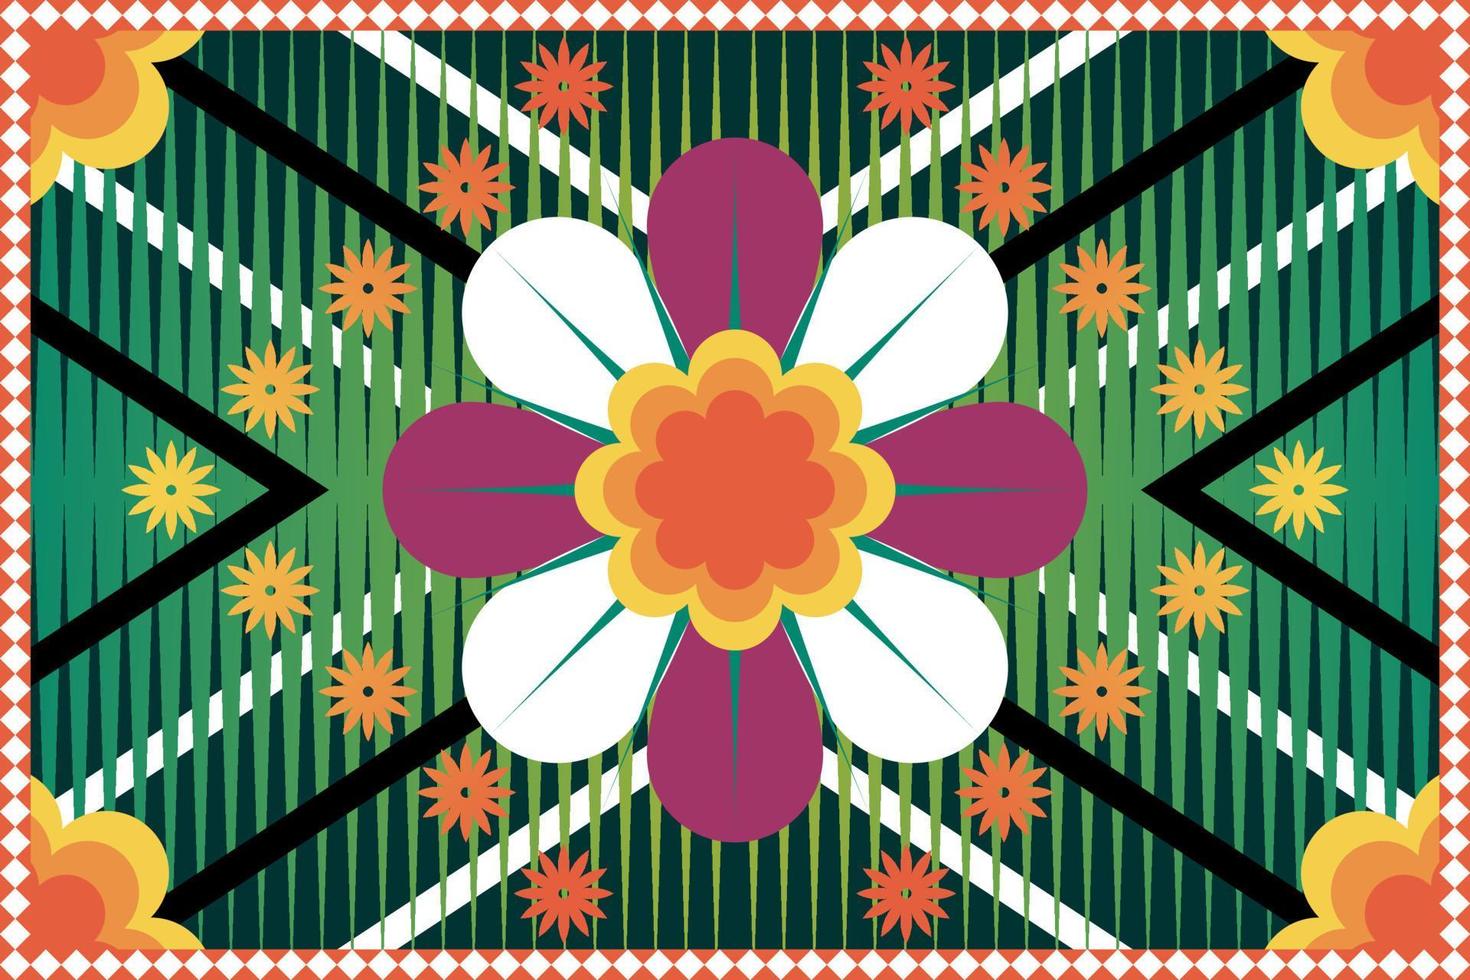 kleurrijk meetkundig etnisch naadloos patroon ikat kunst borduurwerk stijl ontwerp voor behang, achtergrond, kleding stof, gordijn, tapijt, kleding, en inpakken. vector